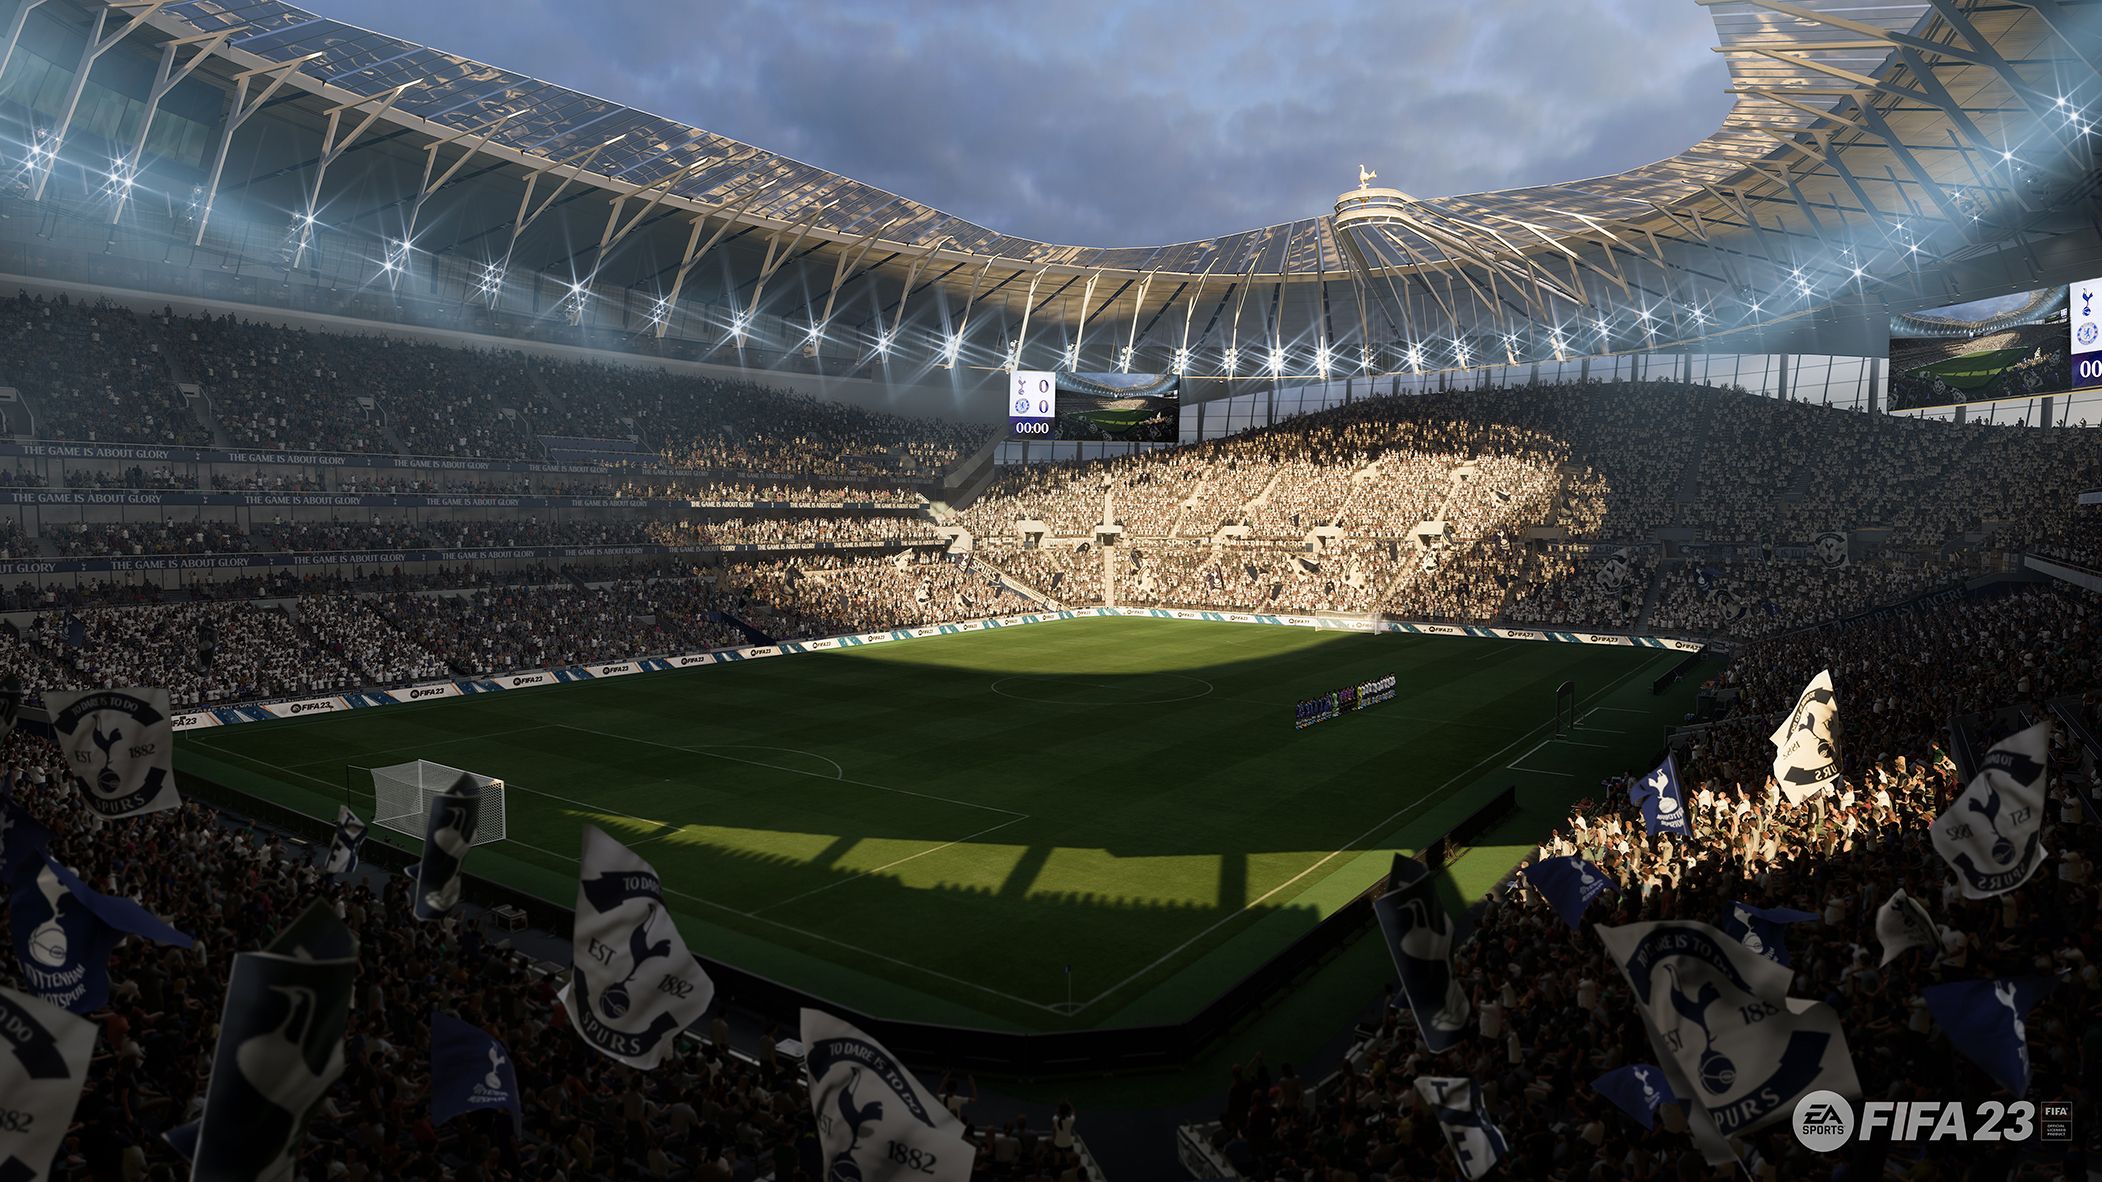 Tottenham Hotspur stadium FIFA 23 